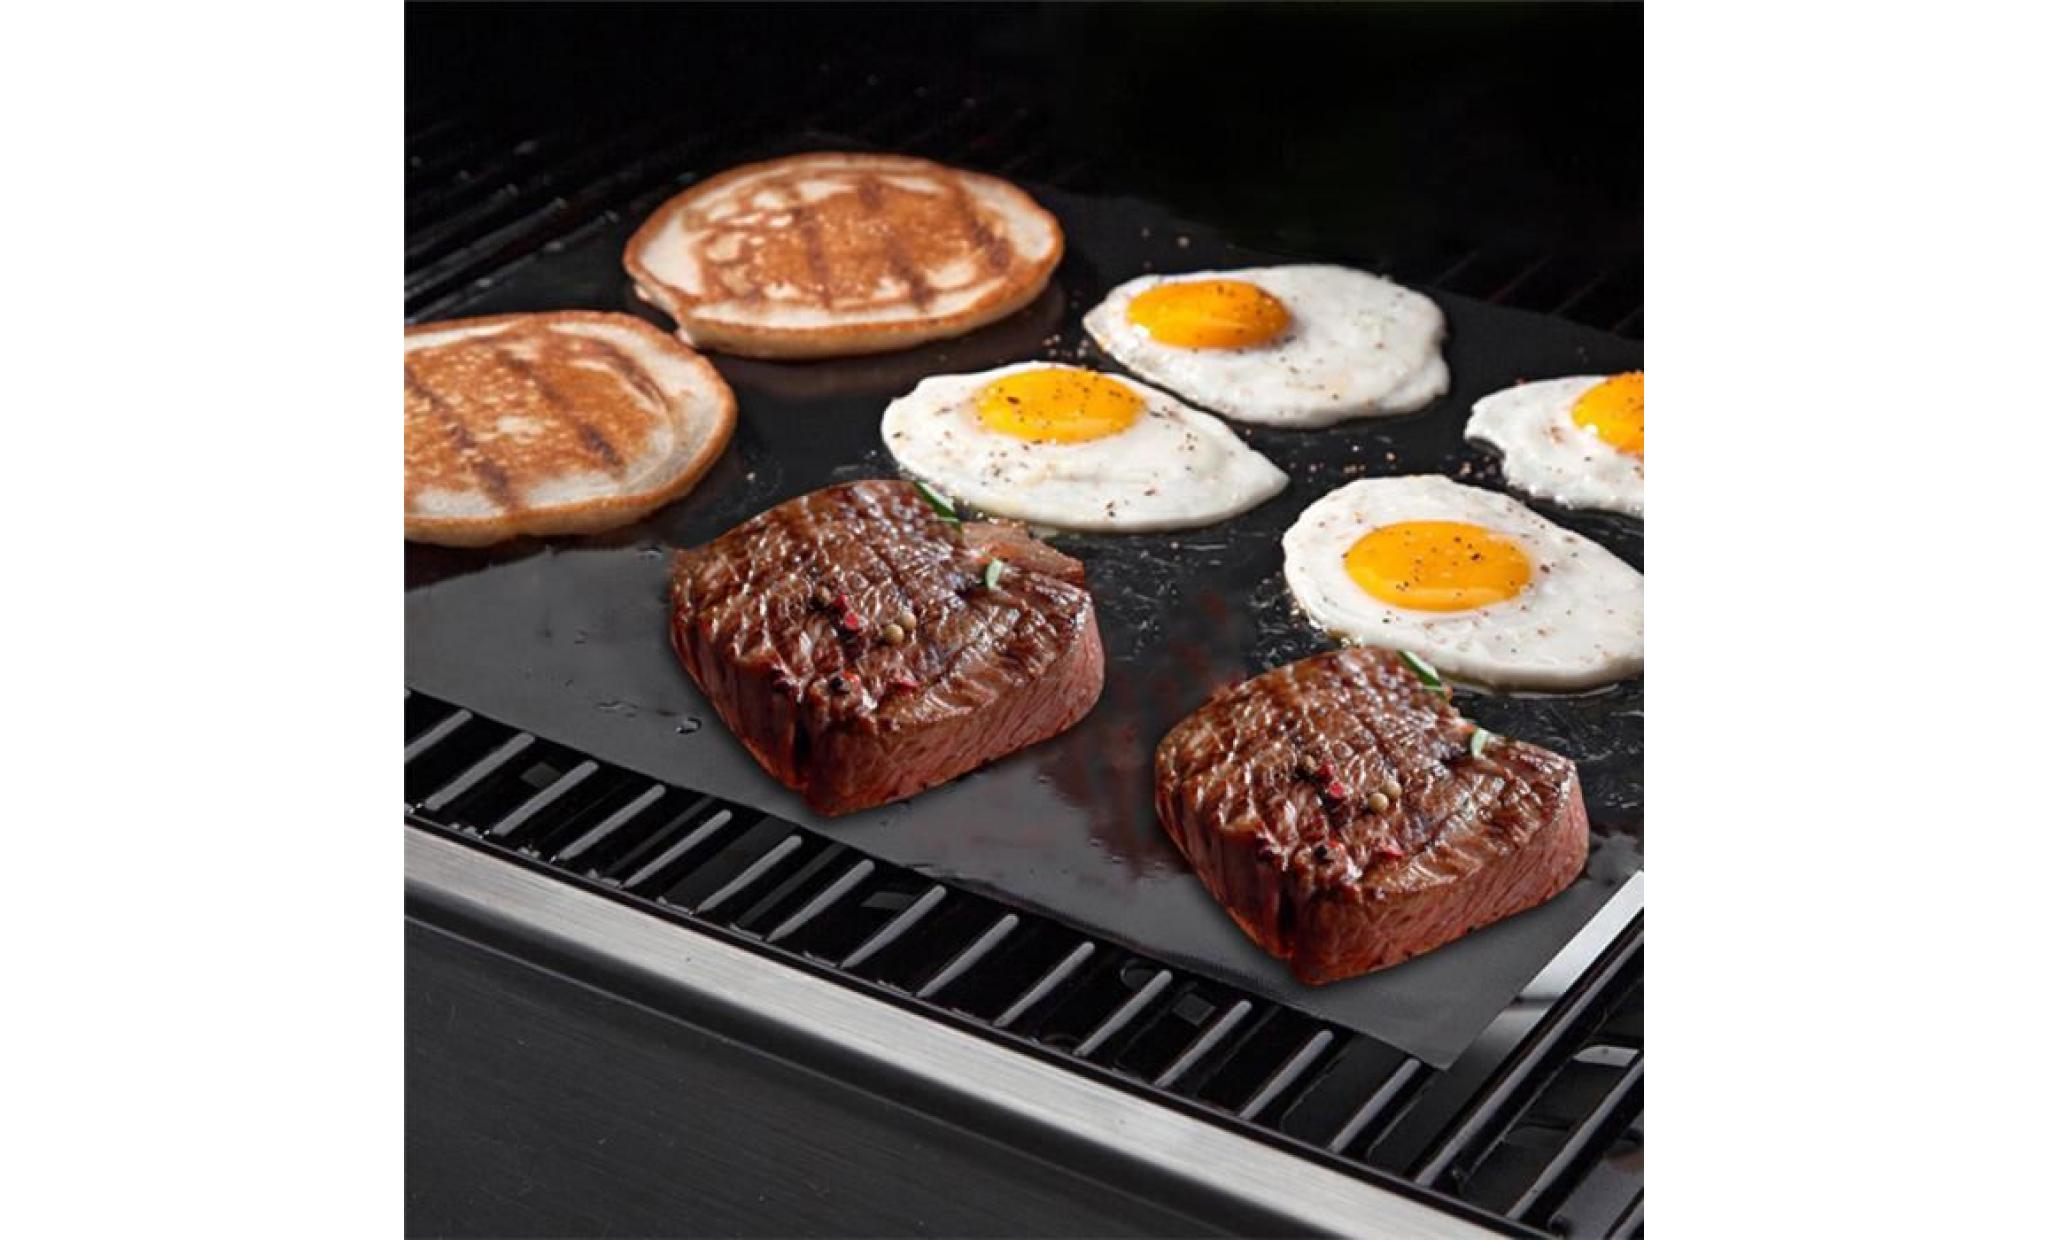 ensemble de 5pcs / set anti étagère bbq grill barbecue baking liners plaques de cuisson réutilisables en teflon outil de cuisine pas cher